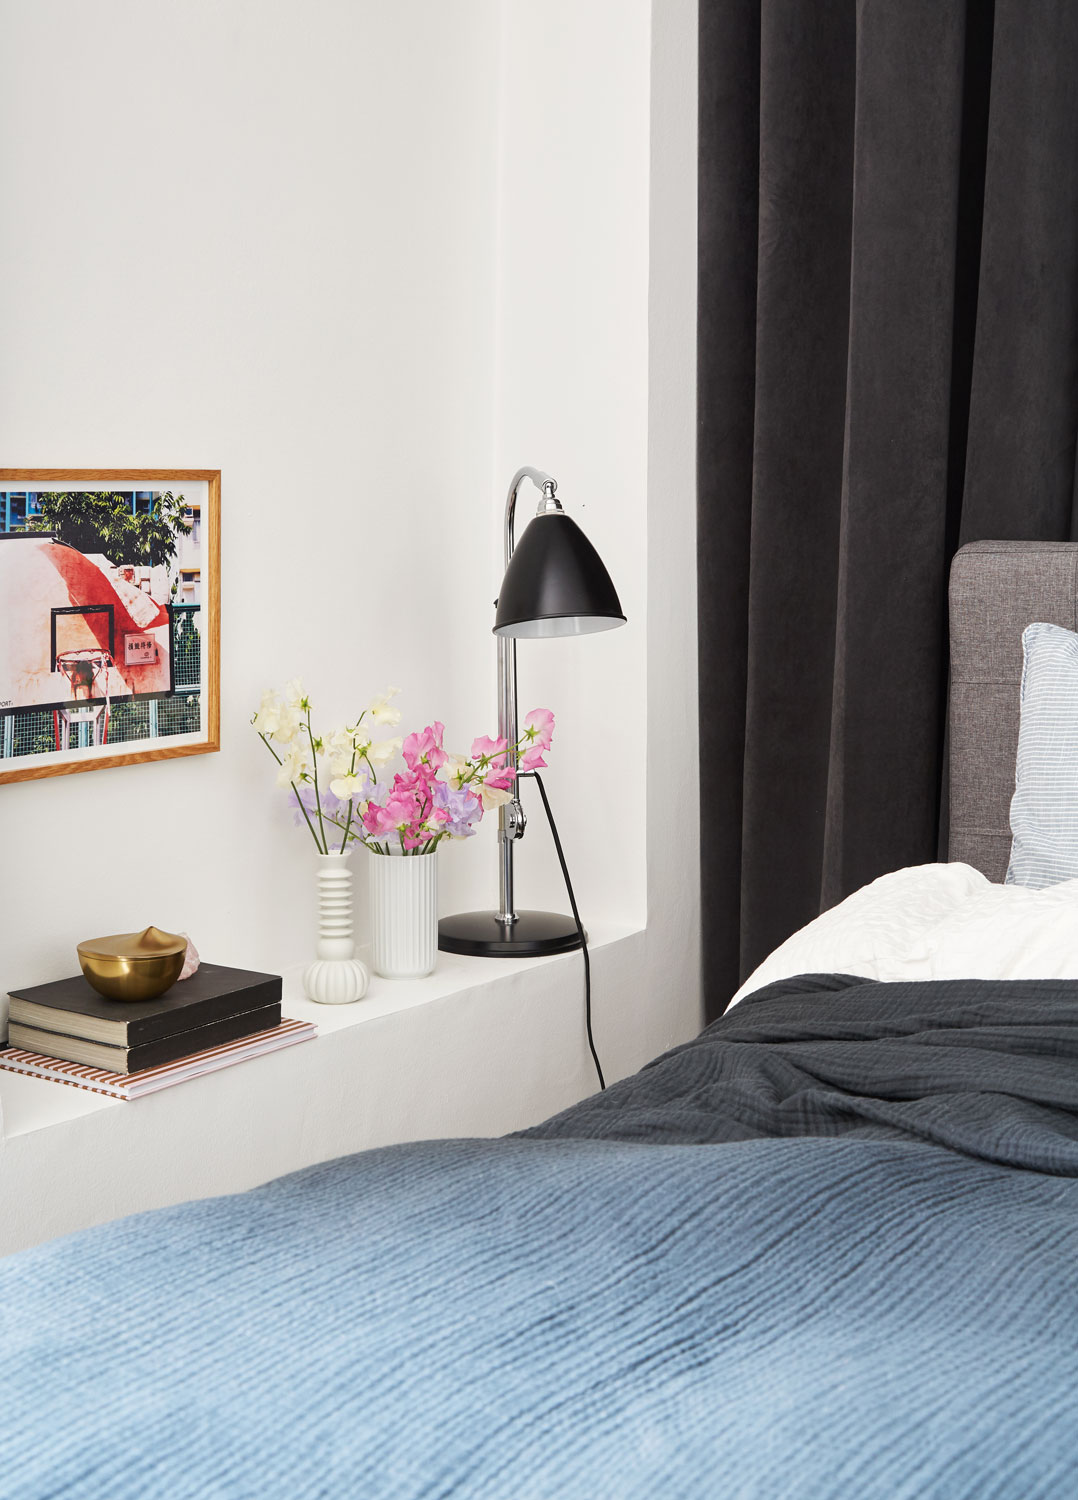 Mảng tường bên trái giường ngủ được tận dụng phần hốc để sắp xếp đèn ngủ có thiết kế màu đen, dáng thanh mảnh và hiện đại, hai lọ hoa sứ xinh xinh, một ít sách và bức tranh trang trí cho nền tường không còn buồn tẻ. Bộ chăn ga gối với màu chủ đạo màu xanh lam đậm và xám - một lựa chọn tuyệt vời để tạo ra cảm giác bình yên. Riêng tấm chăn mỏng được phủ che kín tận chân giường mang lại vẻ nhẹ nhàng và như được che chở.